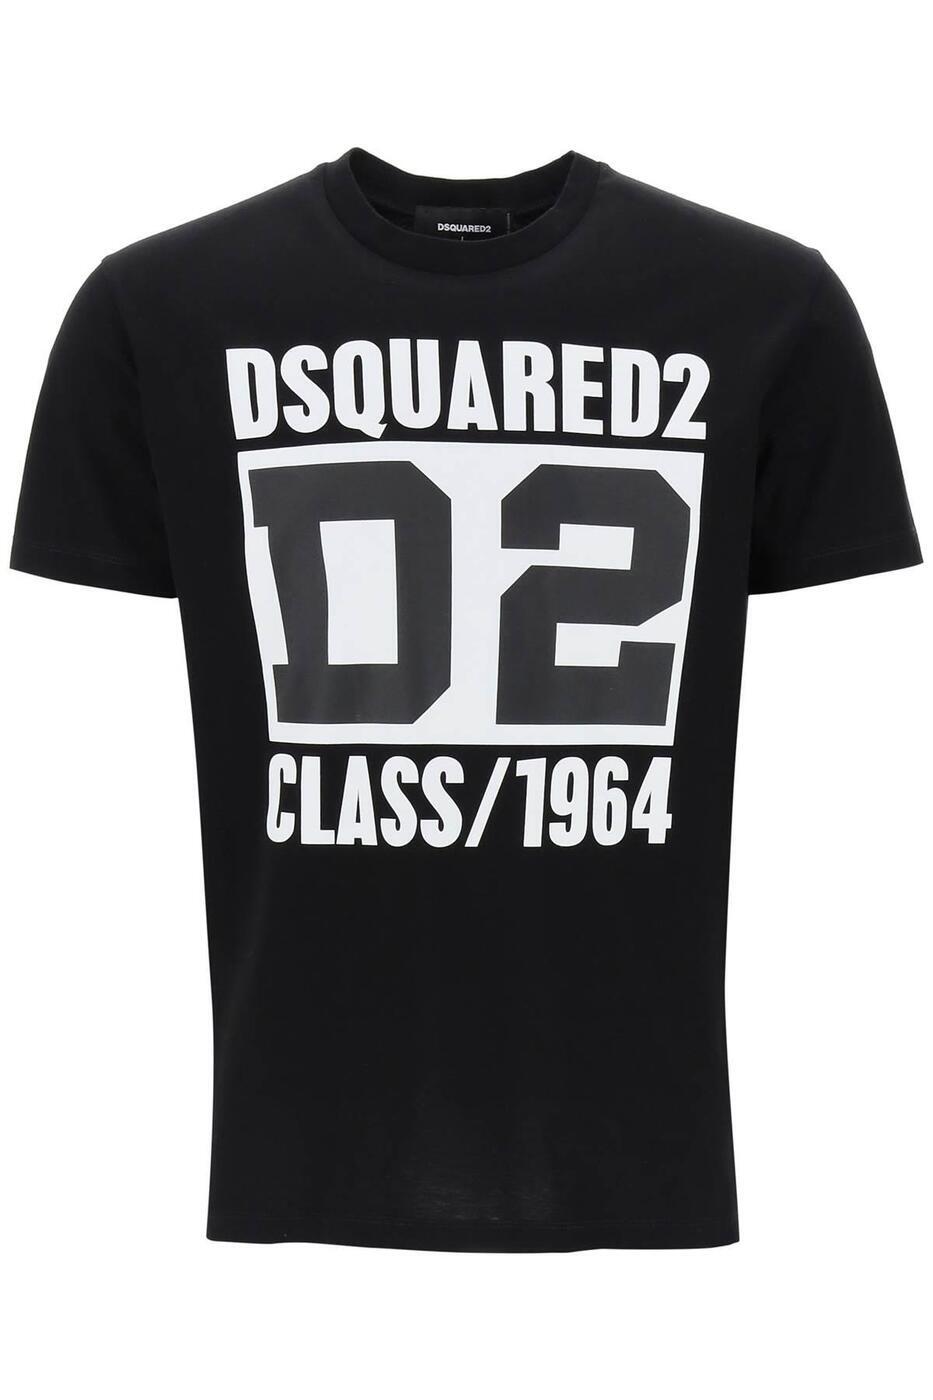 DSQUARED2 ディースクエアード ブラック Black Tシャツ メンズ 7941368086677 【関税・送料無料】【ラッピング無料】 ba